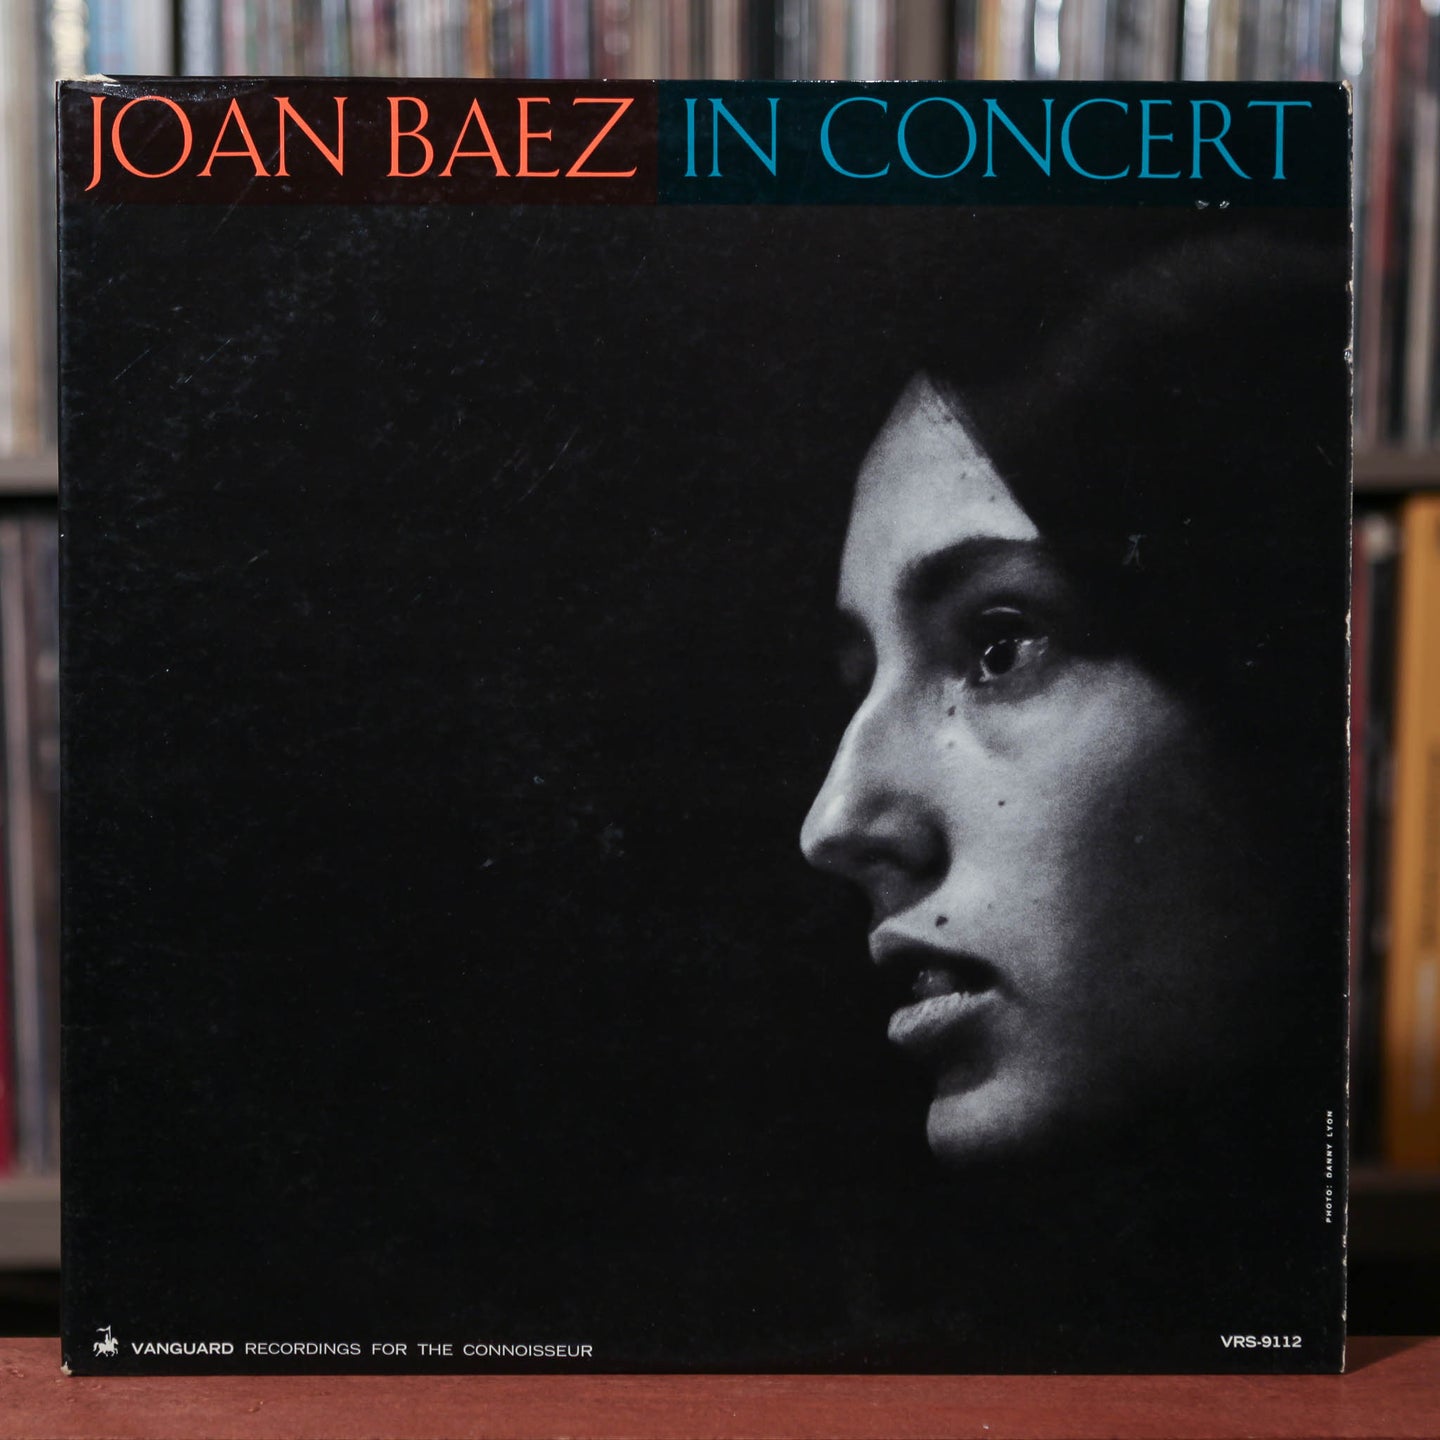 Joan Baez - In Concert - 1962 Vanguard, VG+/VG